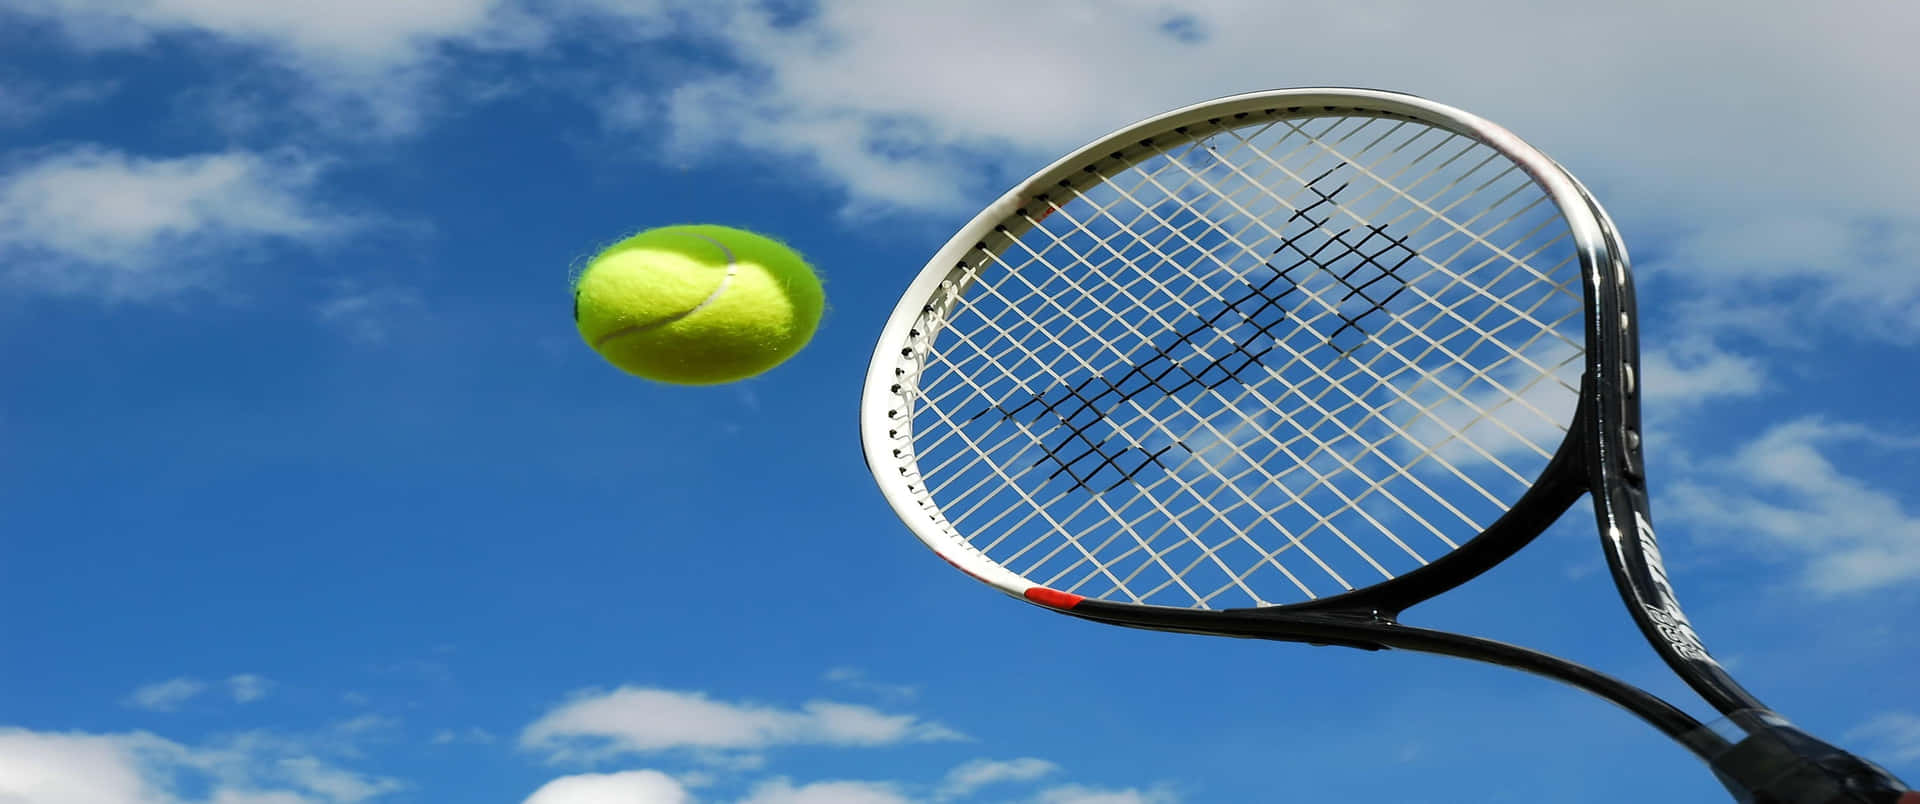 Giocaa Tennis In Una Risoluzione Maestosa Di 3440 X 1440p